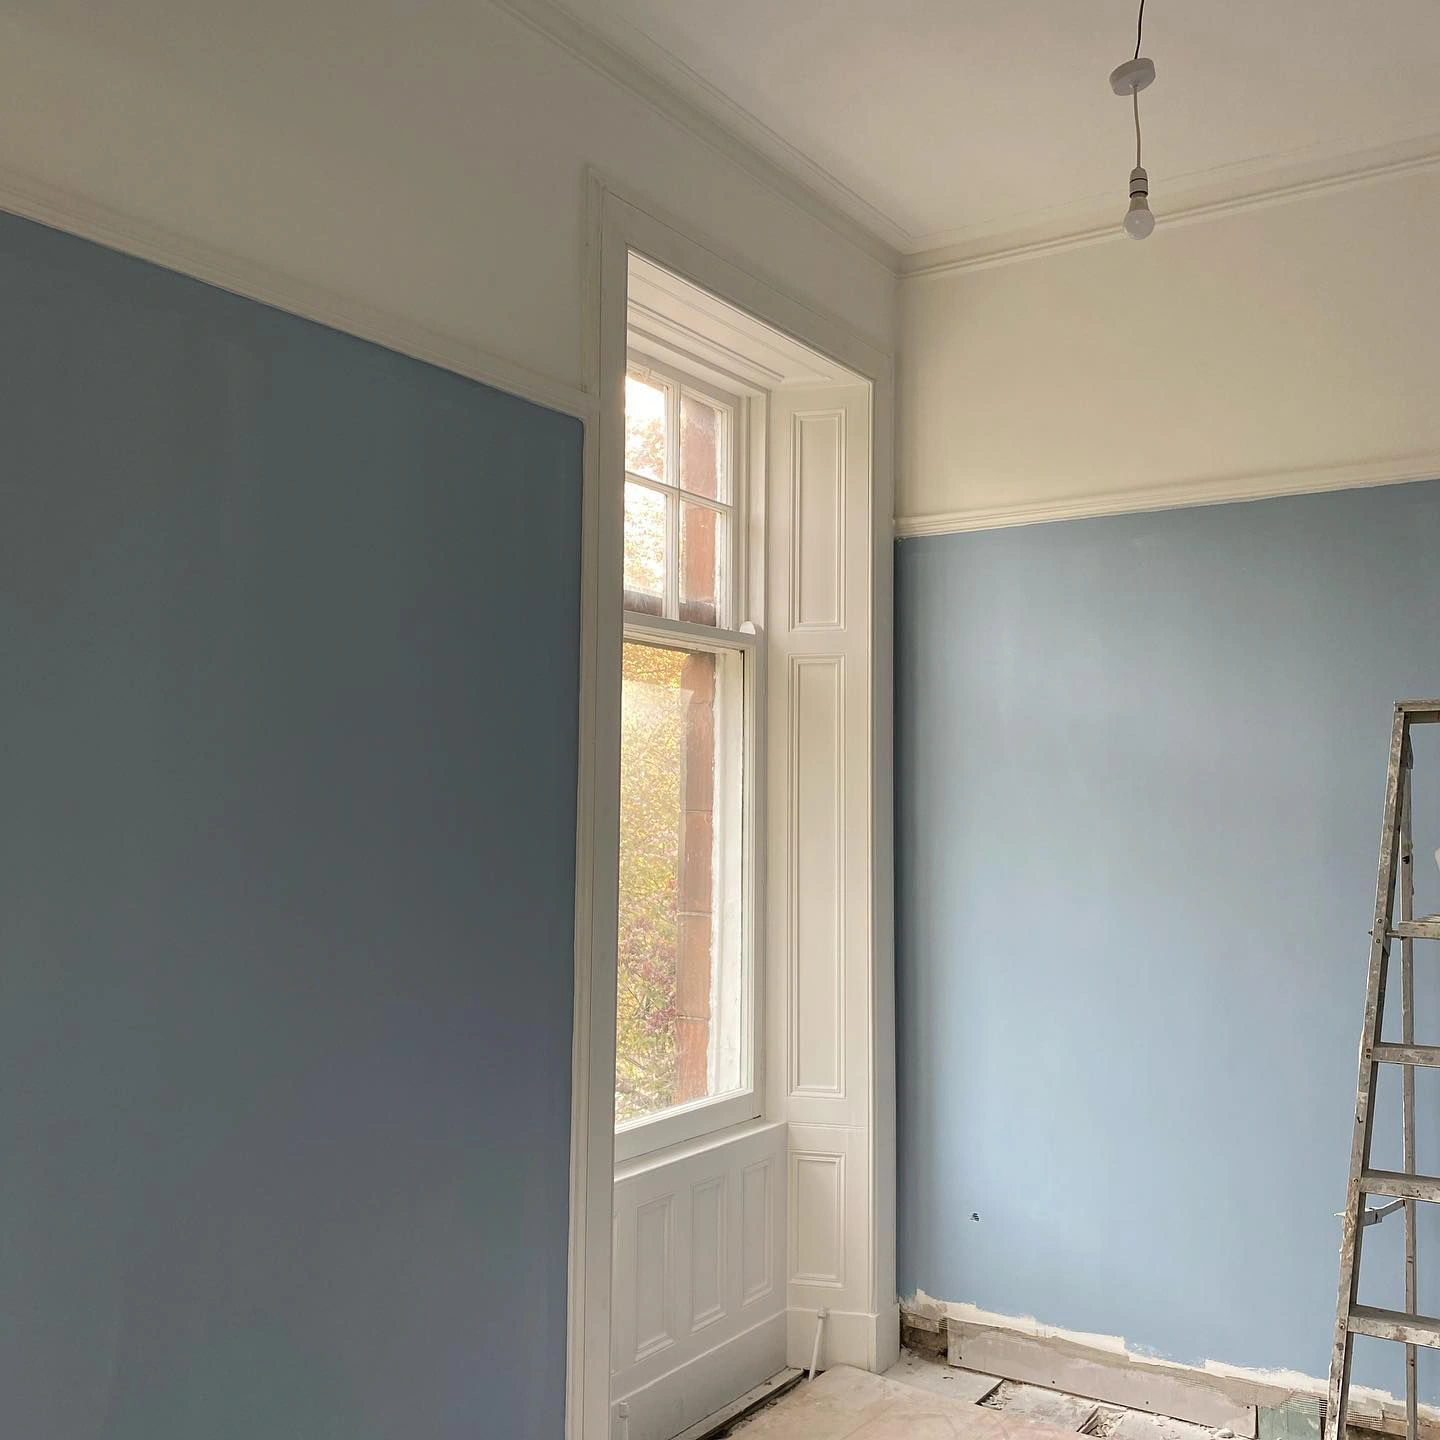 Farrow and Ball Lulworth Blue 89 wall paint